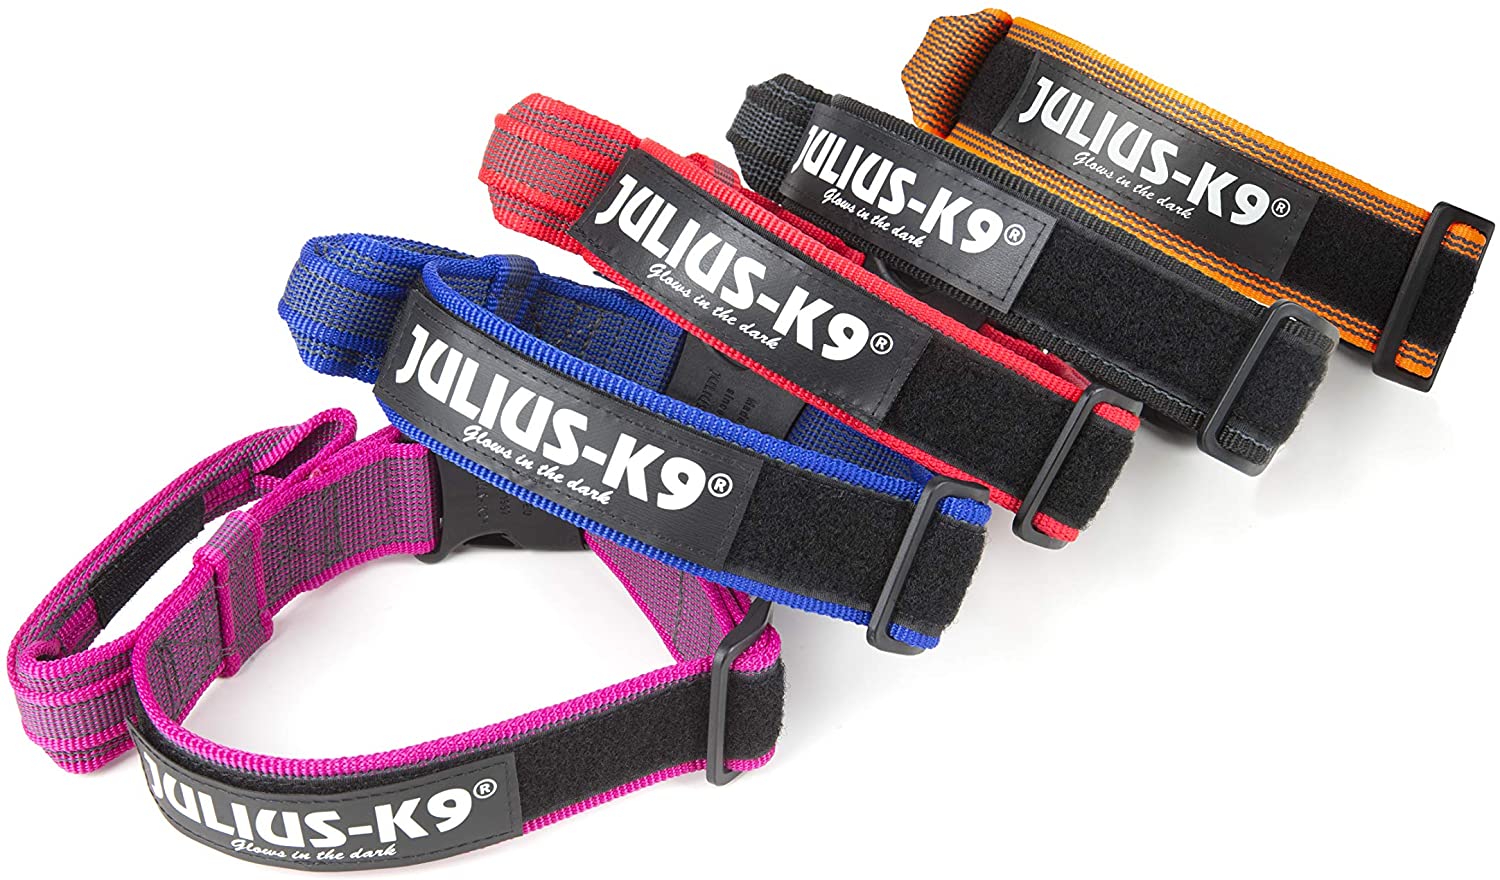  Julius-K9 Color & Gray Collar con La Manija, La Cerradura De Seguridad Y El Remiendo Intercambiables, 50 Mm (49-70 Cm), Naranja-Gris 